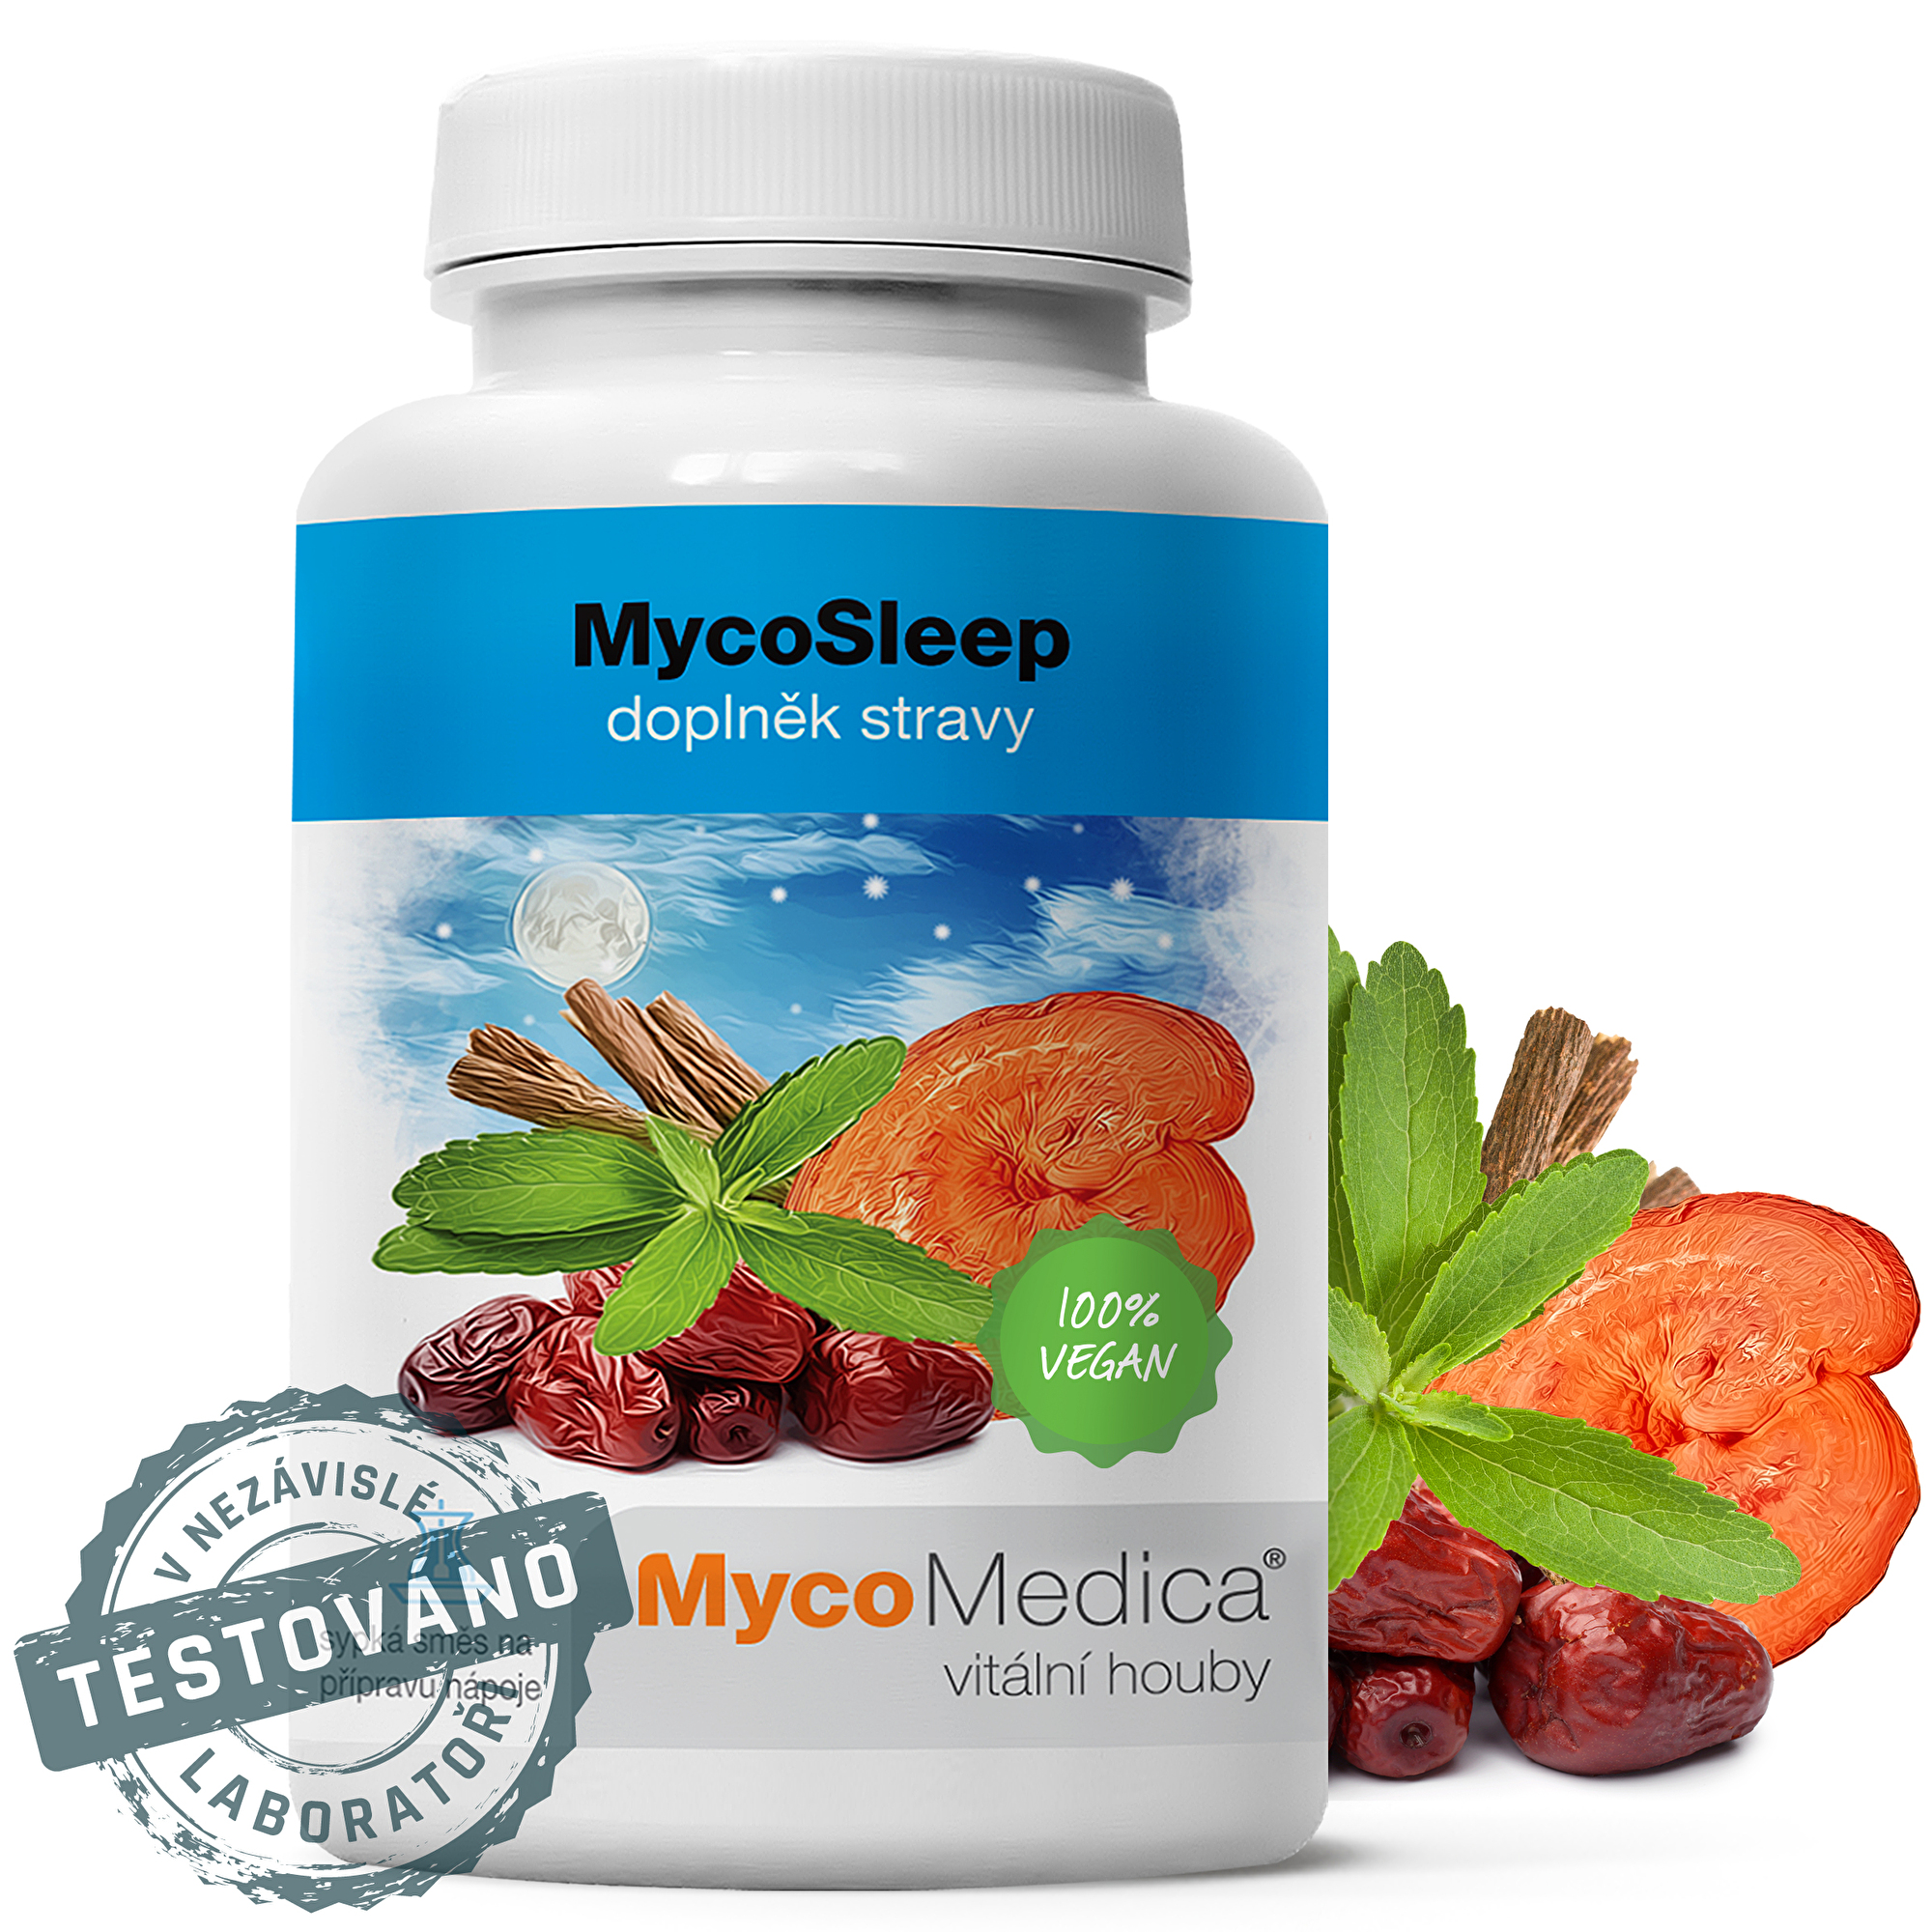 MycoMedica MycoSleep 90 g